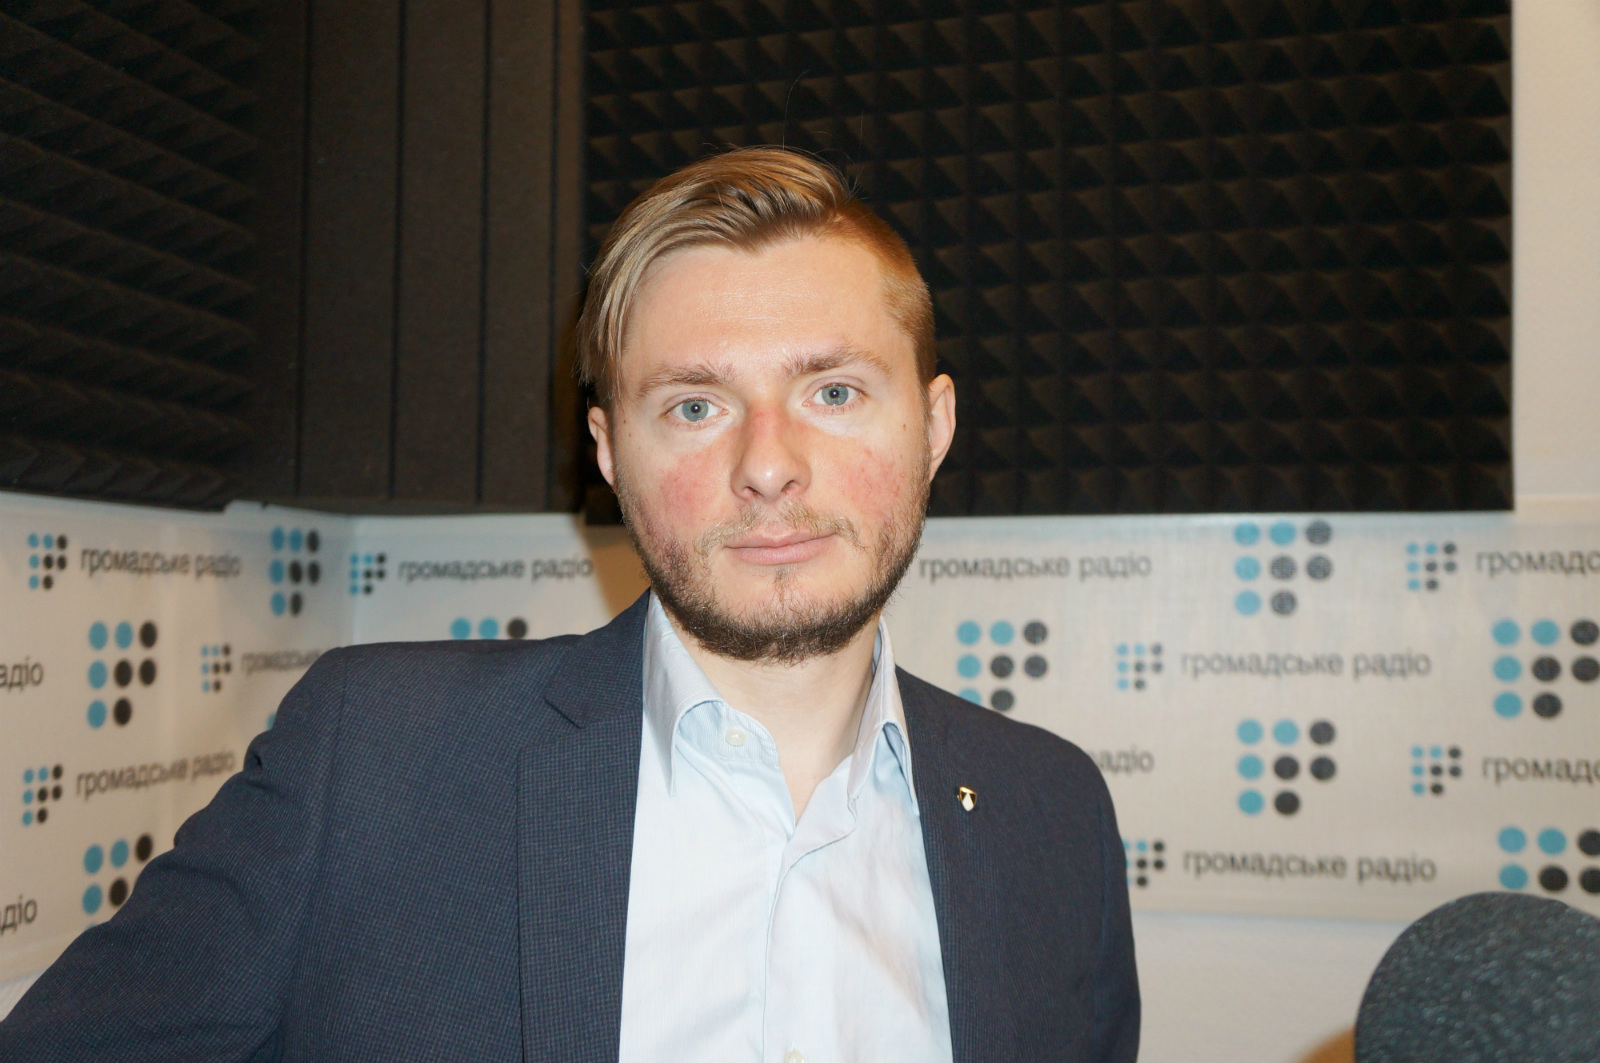 Польські менеджери в Україні — не представники польської влади, — журналіст